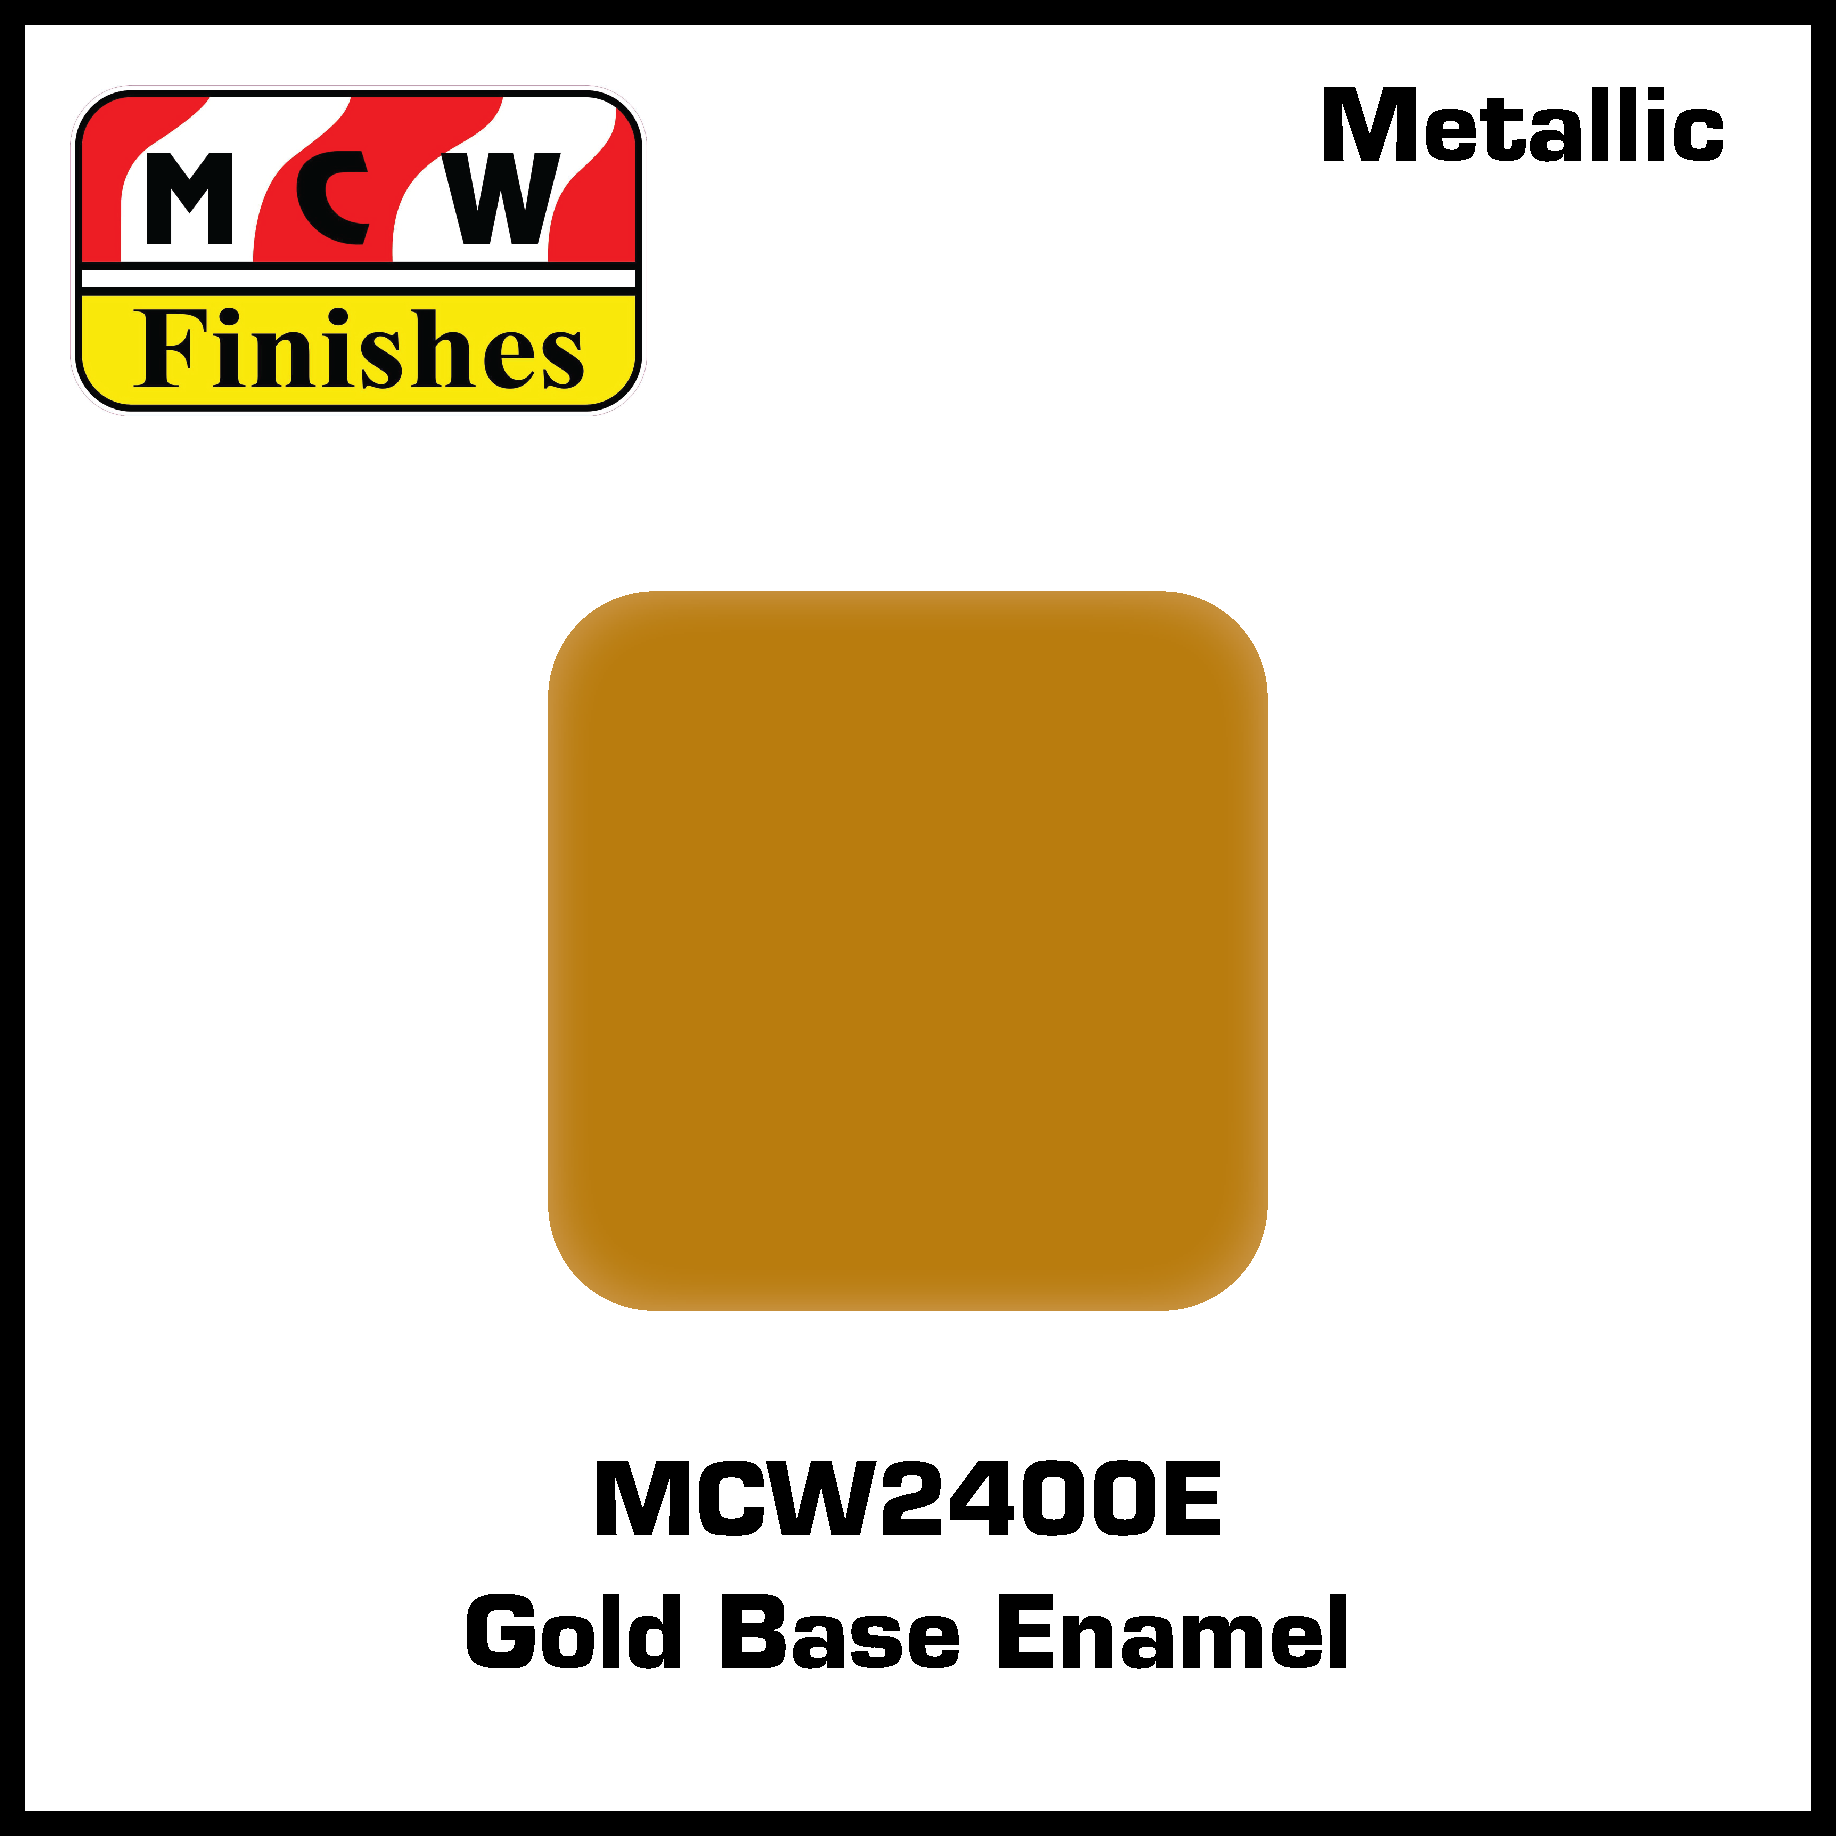 MCW Finishes 2400E Gold Base Enamel